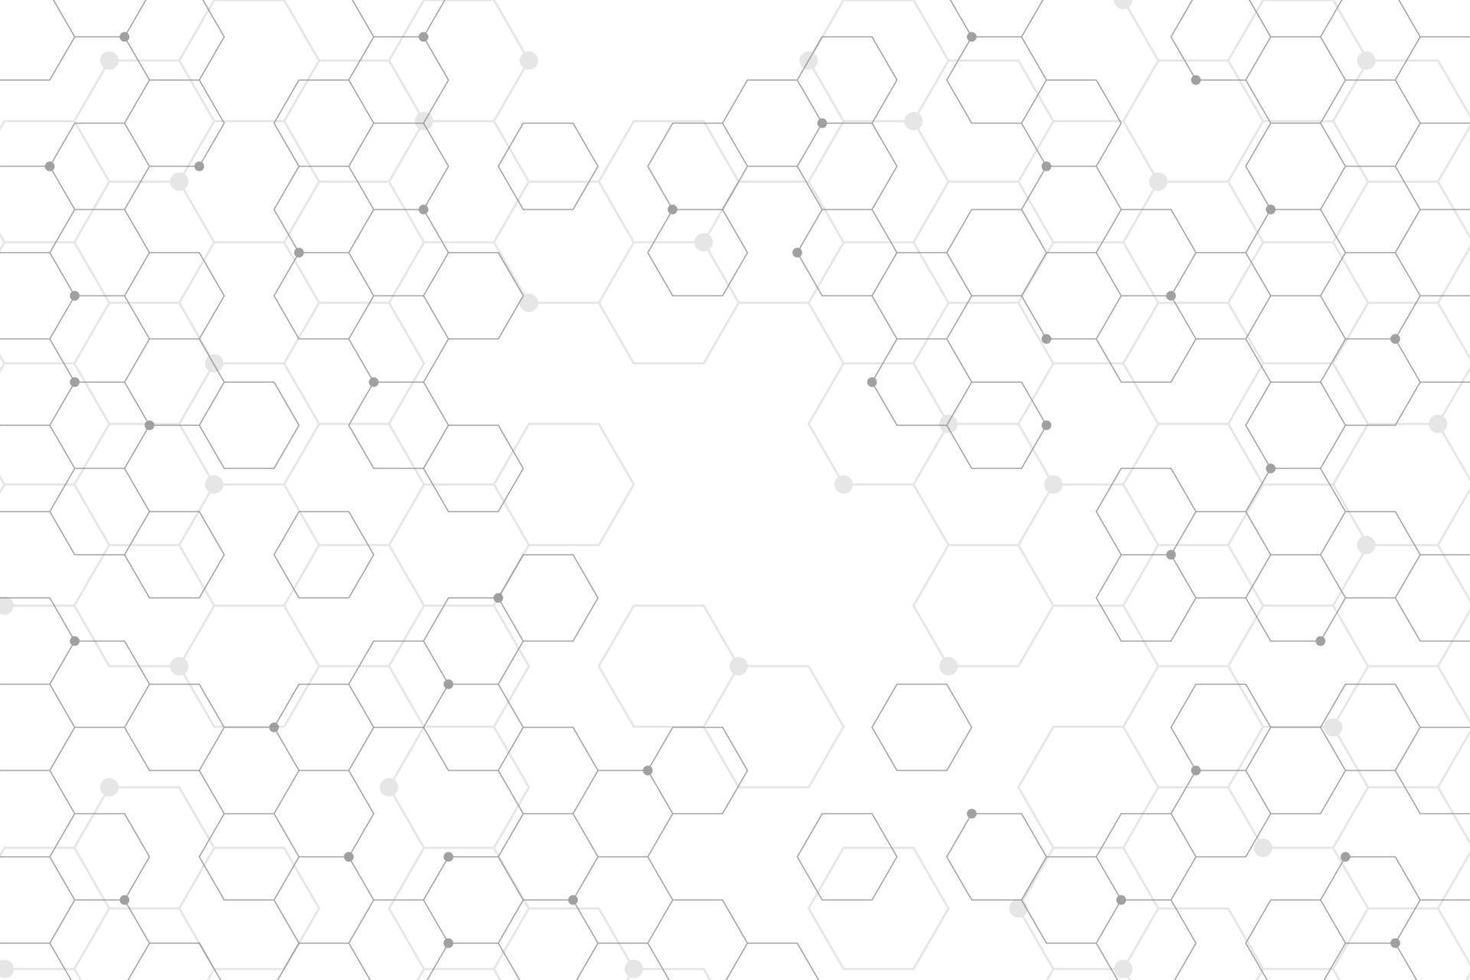 weißer abstrakter Hintergrund mit Hexagonmuster vektor